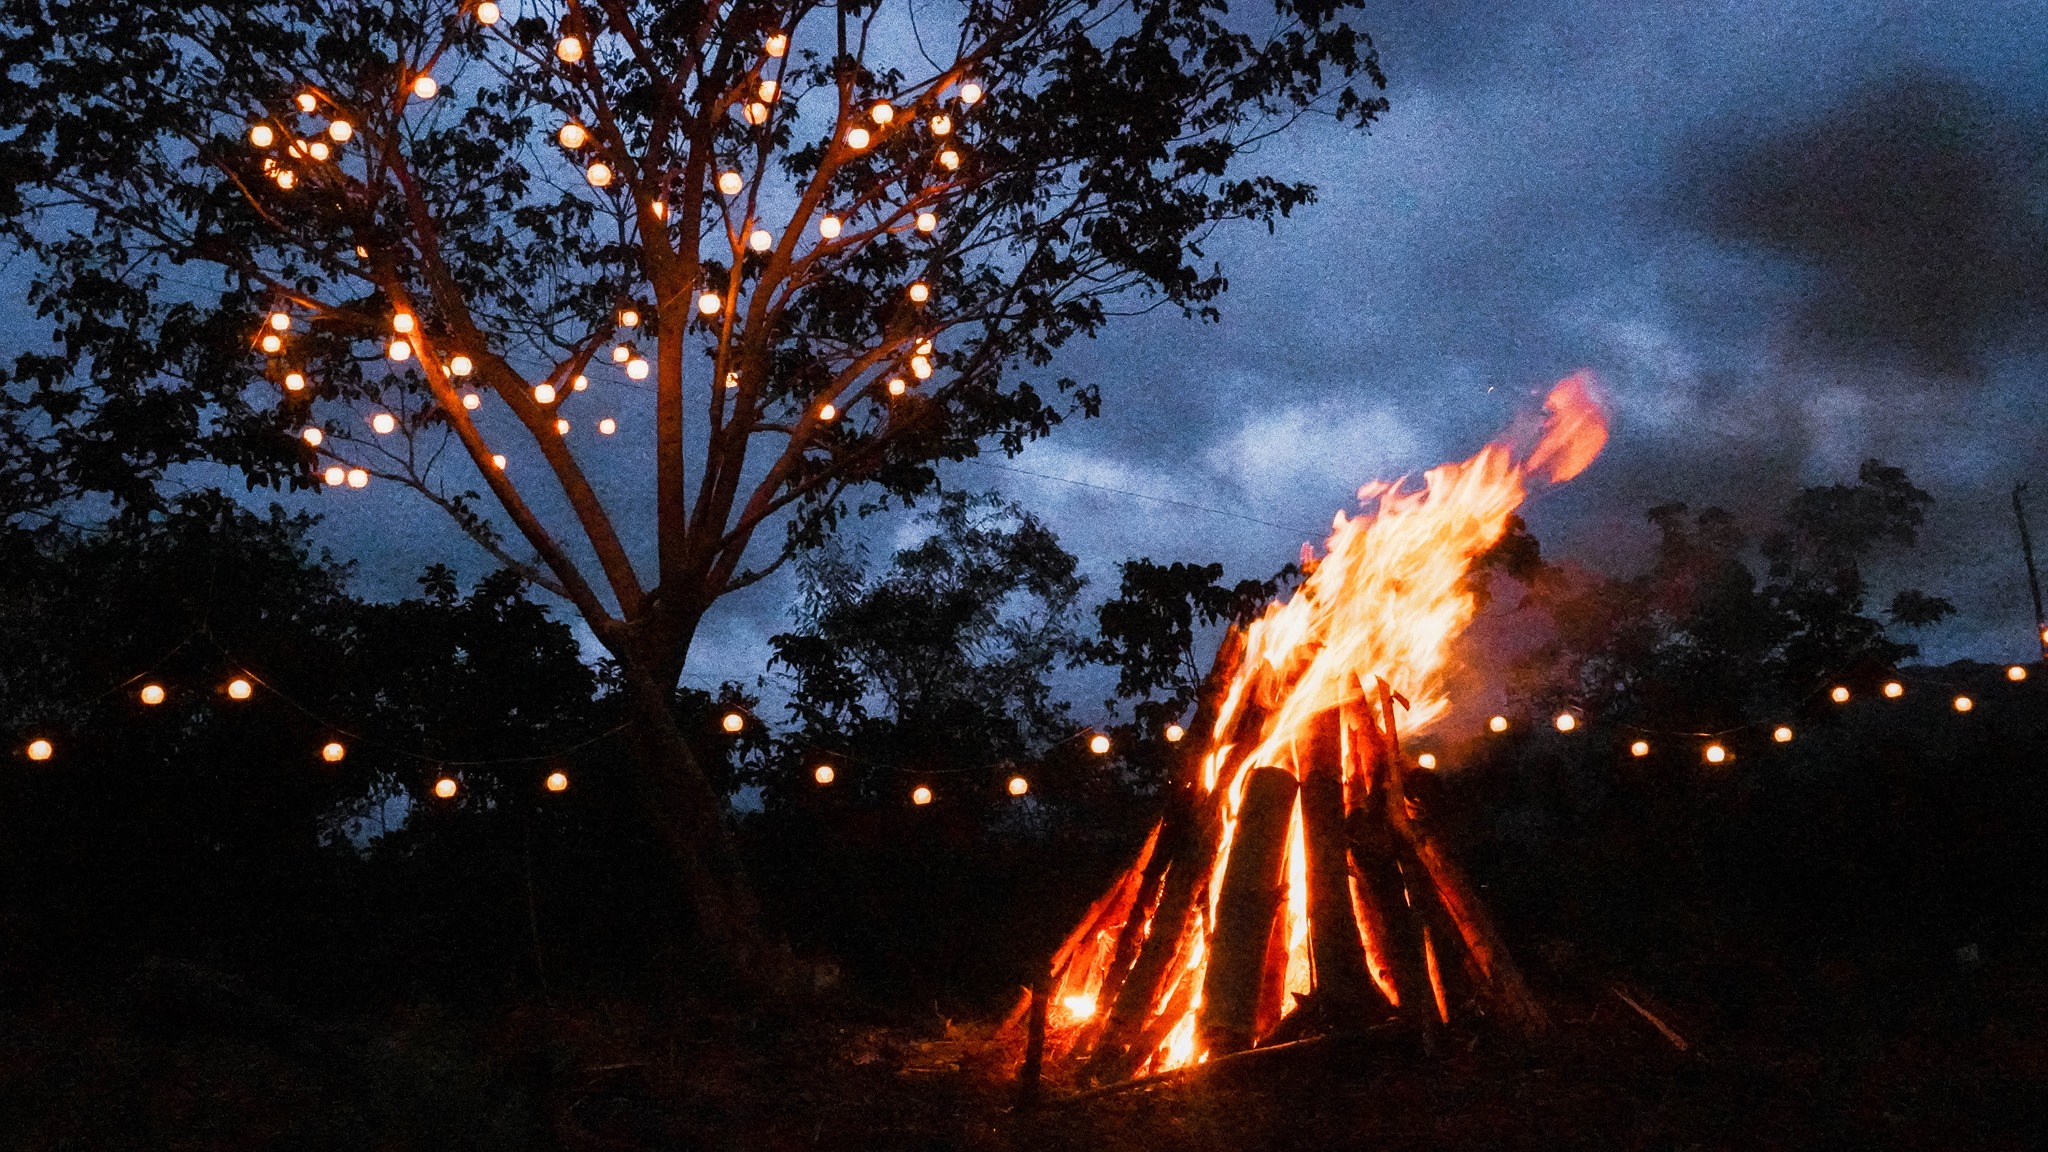 Bonfire setup at Kalinaw sa Kalawakan Bulacan